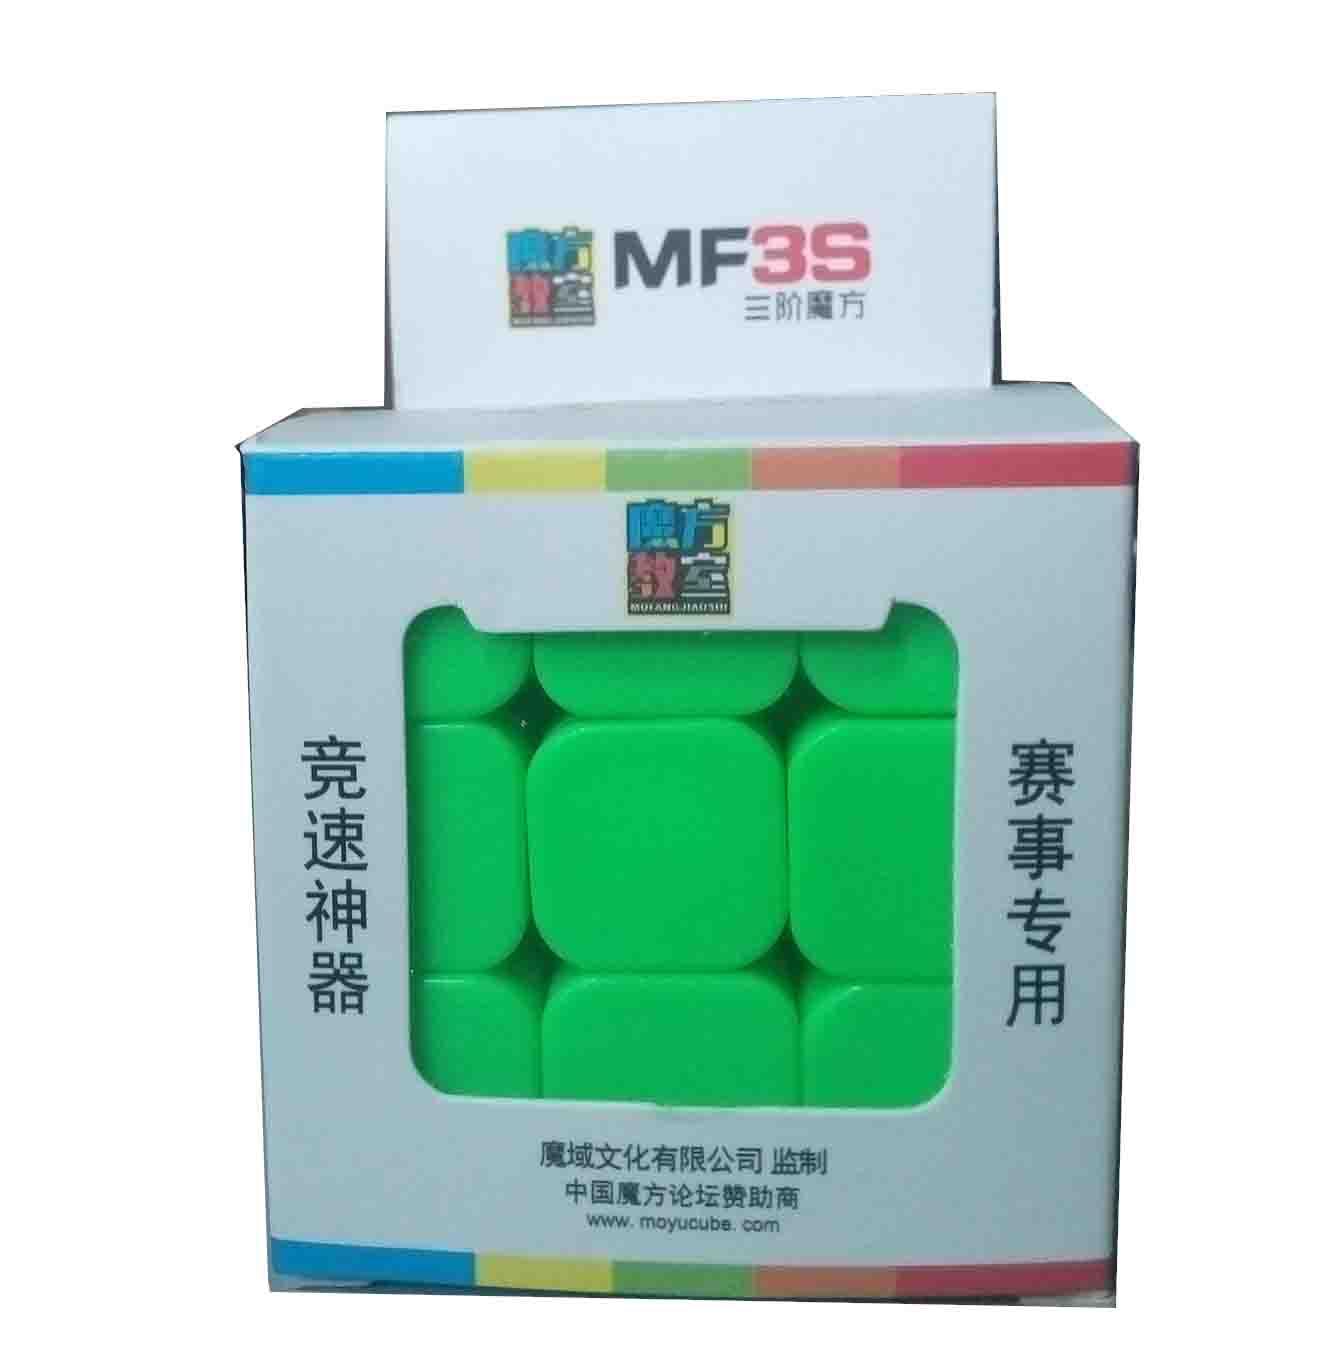 Rubik 3x3 Không viền - MF3S MoFangJiaoShi 3x3x3 Stickerless